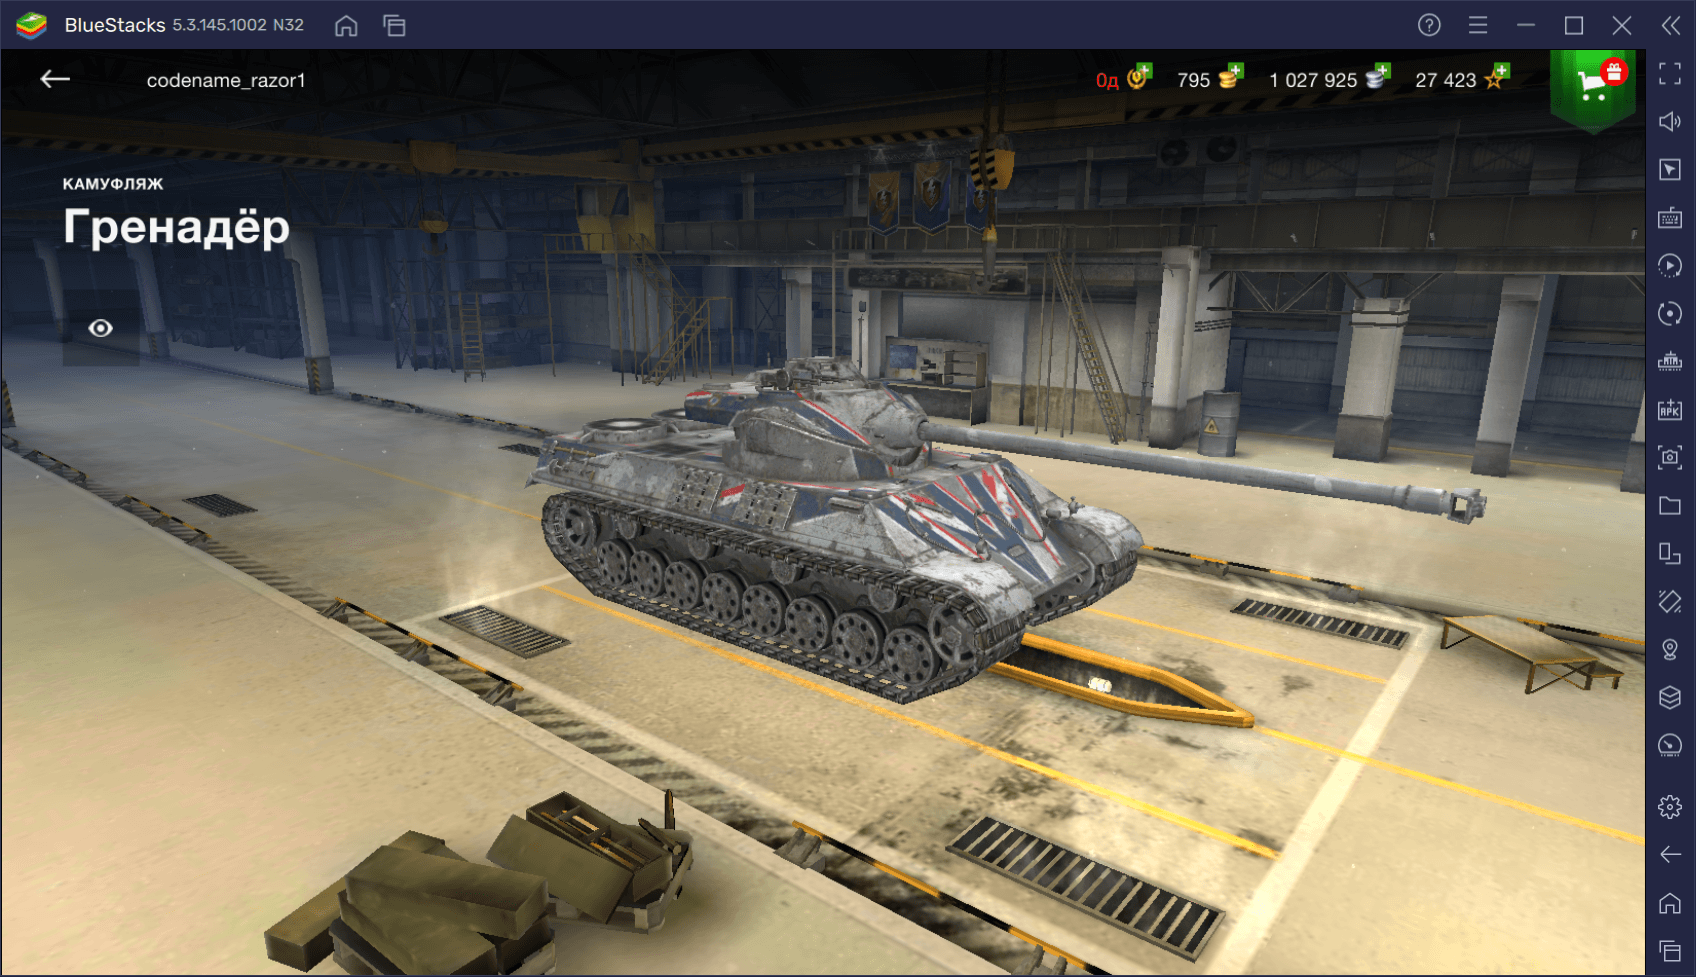 Гайд по премиумному танку Somua SM в World of Tanks Blitz. Обзор характеристик, преимуществ и тактик игры